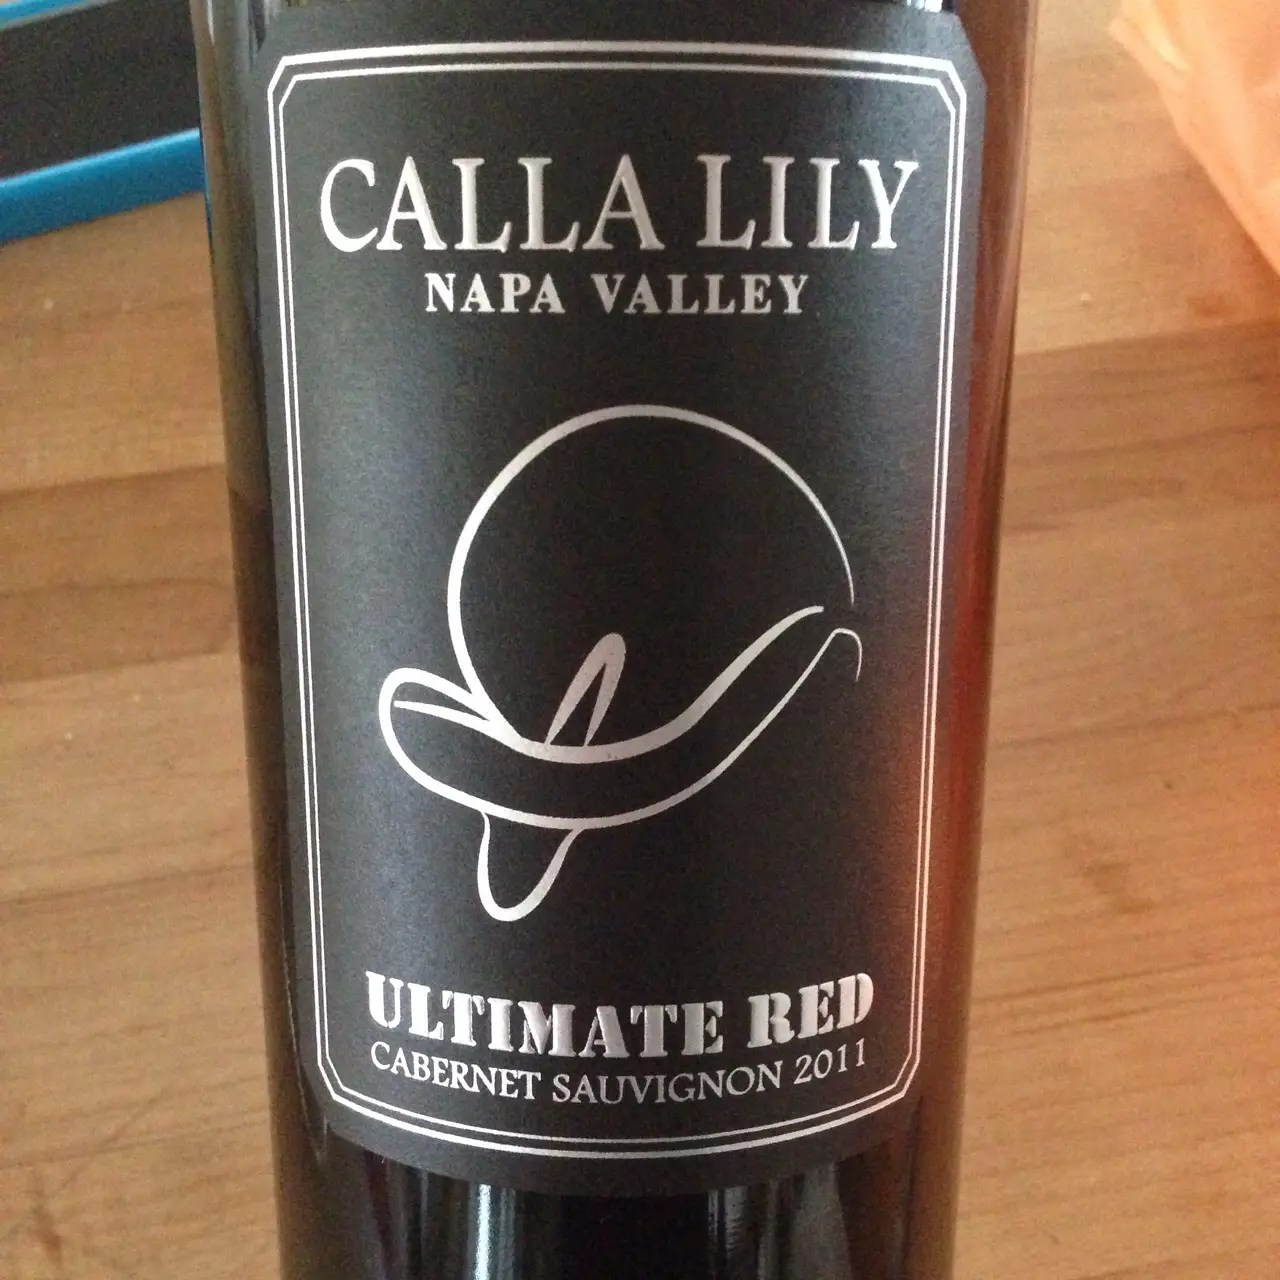 Calla Lily Ultimate Red Napa Valley Cabernet Sauvignon